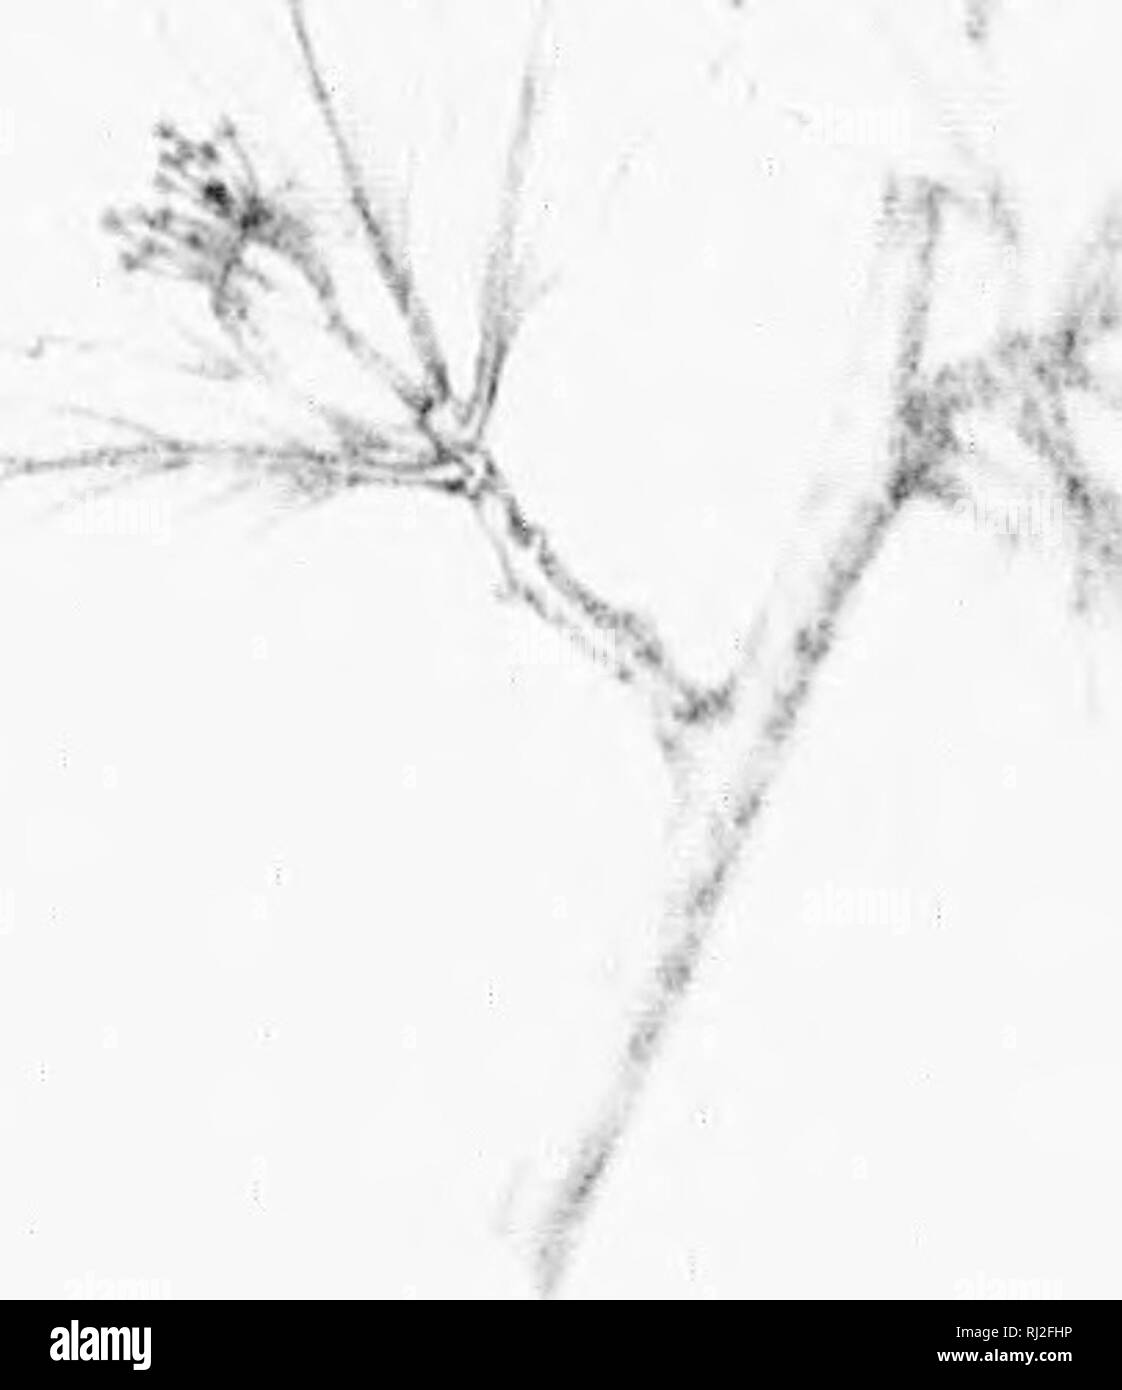 . Die Silva von Nordamerika [microform]: Eine Beschreibung der Bäume, die natürlich in Nordamerika exklusive von Mexiko wächst. Bäume; Bäume; Dicotyledons; Arbres; Arbres; Dicotylédones. UOSAlK. Ich;. obovato cremige nd fällt in Octo-; uul auffällige bIow, und tief nach Süden lersey iidoncd Felder oder Bristol, Florida, liced im Baum - wie Bischof Compton, "roni Pflanzen Multi-kulti-iosity anstatt in die von Miller • 0 zitiert, theci'l foiiareii mrlimn ttjipear zu #t^V haben k" wurde ^i". ""^^, -0%^M^-. Ich habe eine 1 Y I/t ^. Bitte beachten Sie, dass diese Bilder aus gescannten Seite Bilder extrahiert werden, Stockfoto